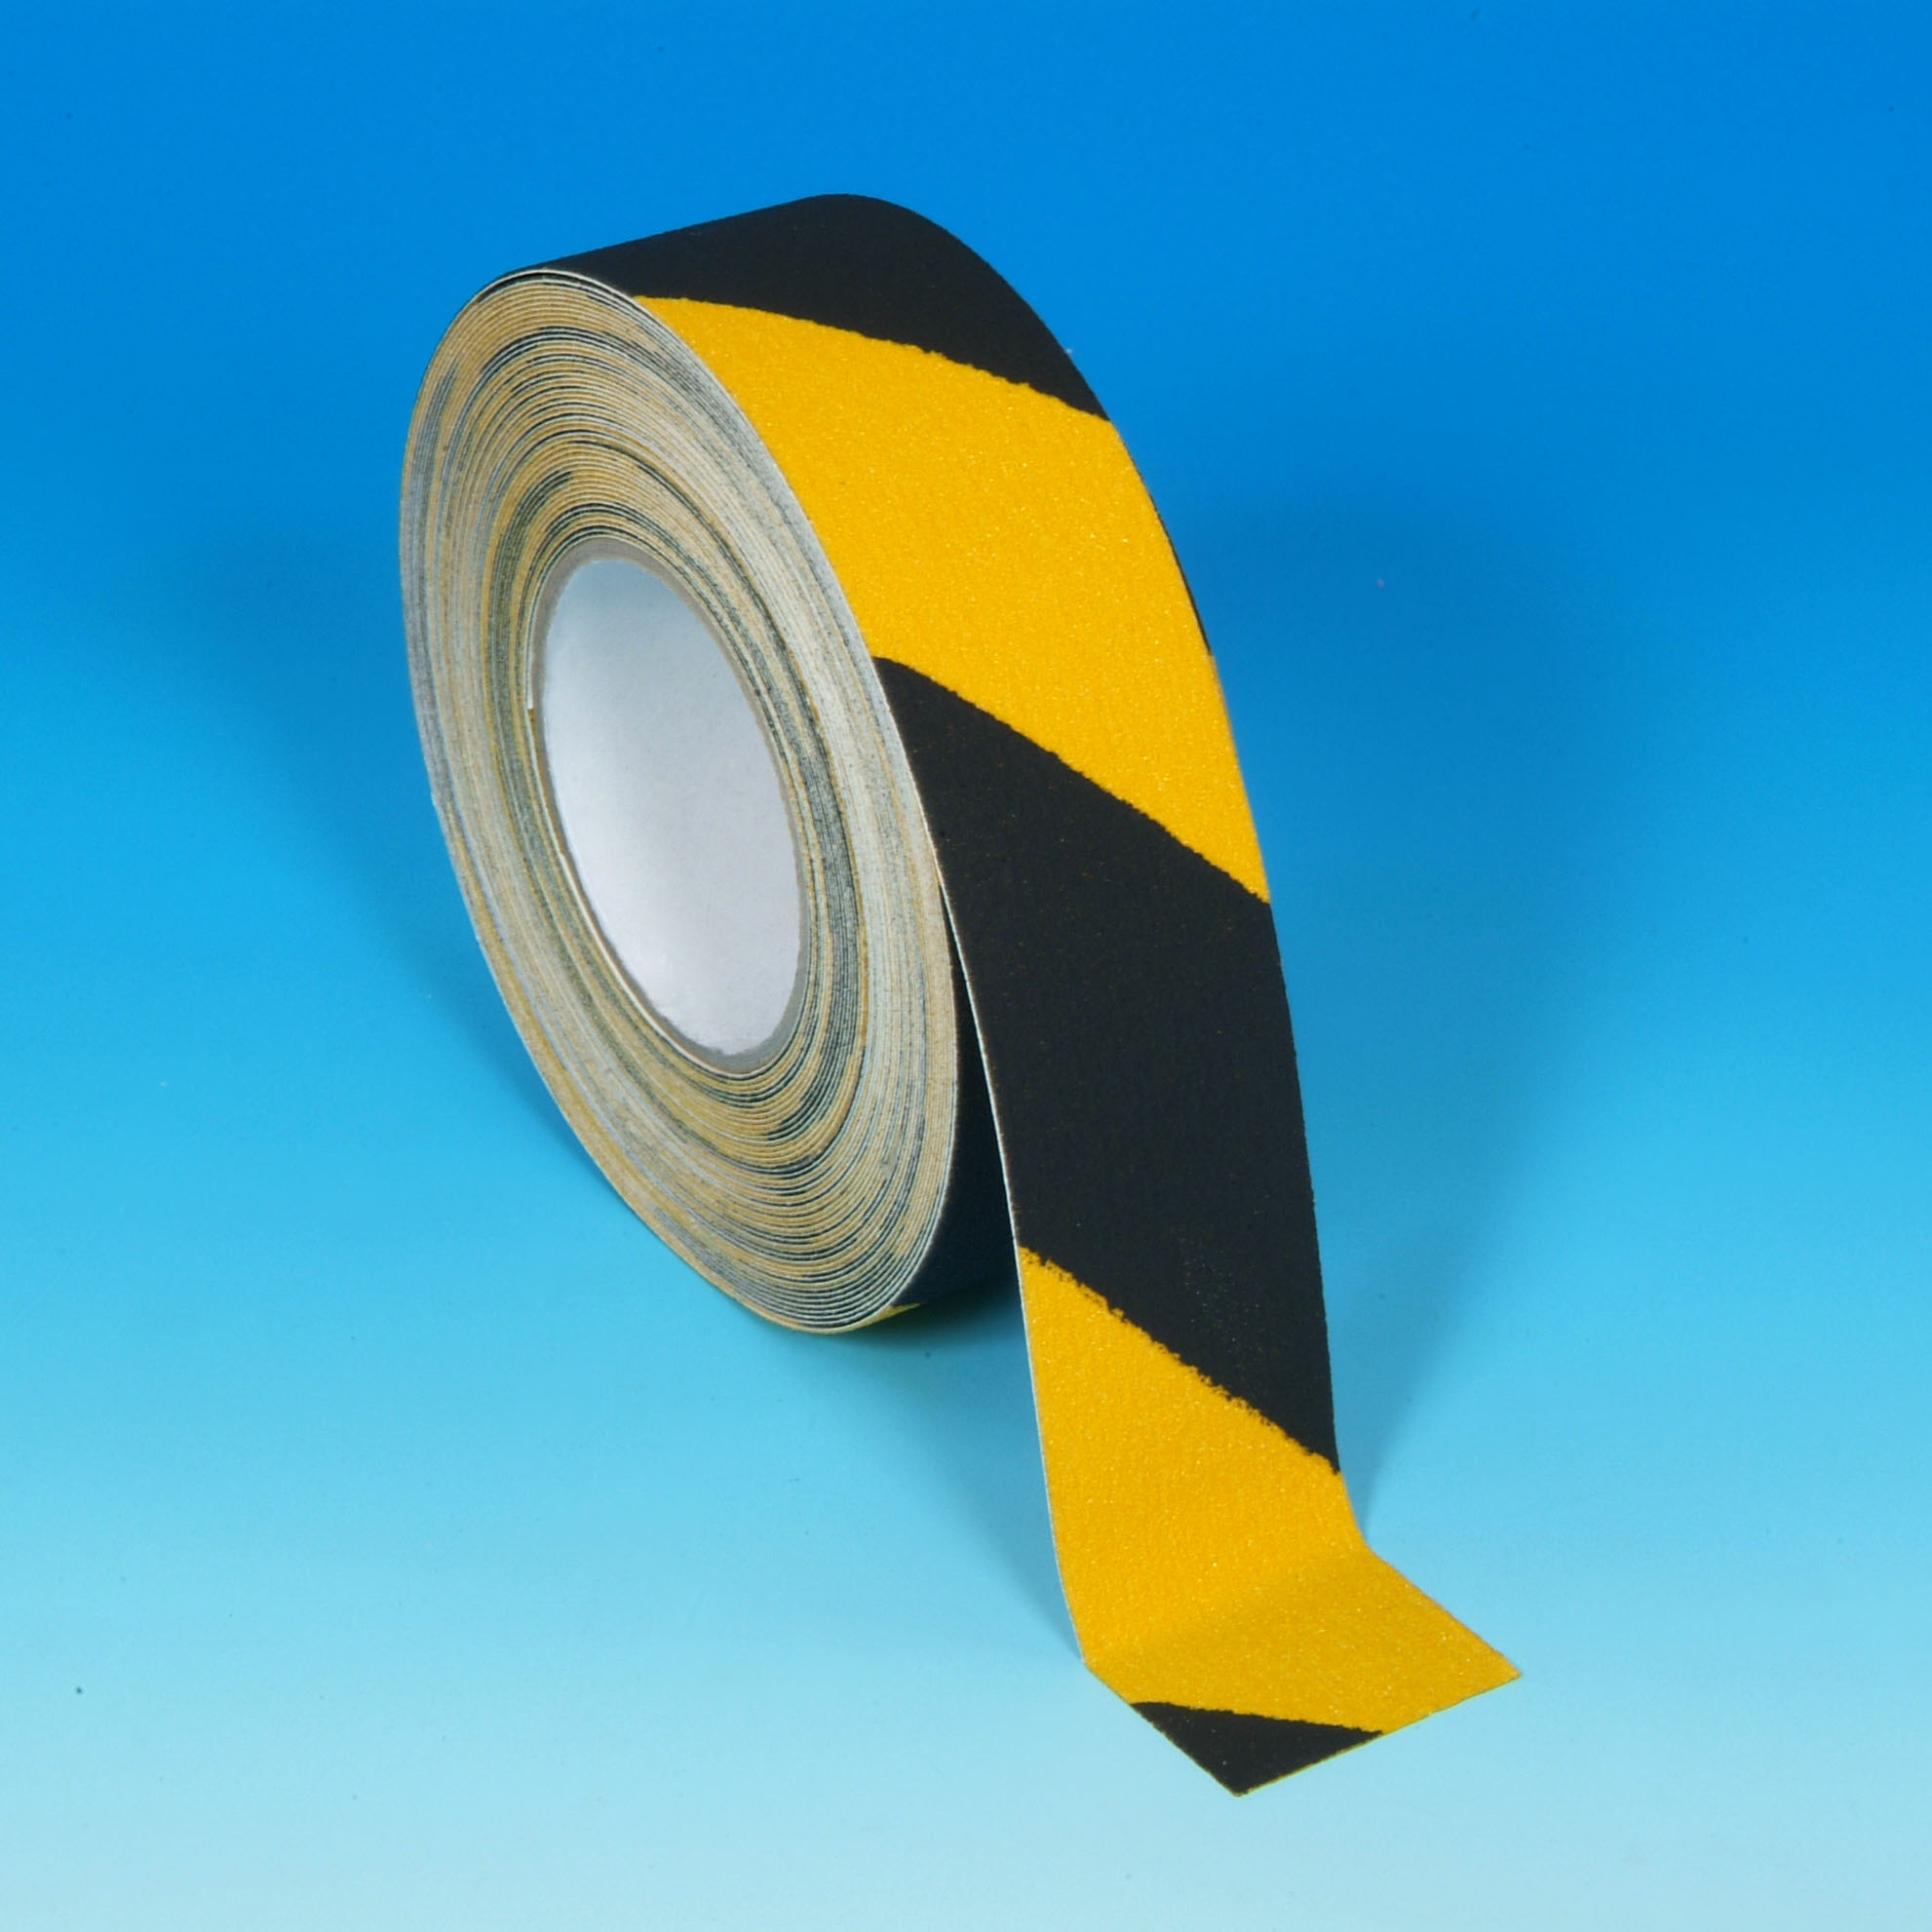 Populair Moeras Ga naar beneden Goodflooring Standaard Antislip Tape 50 mm zwart-geel - Haagh Protection